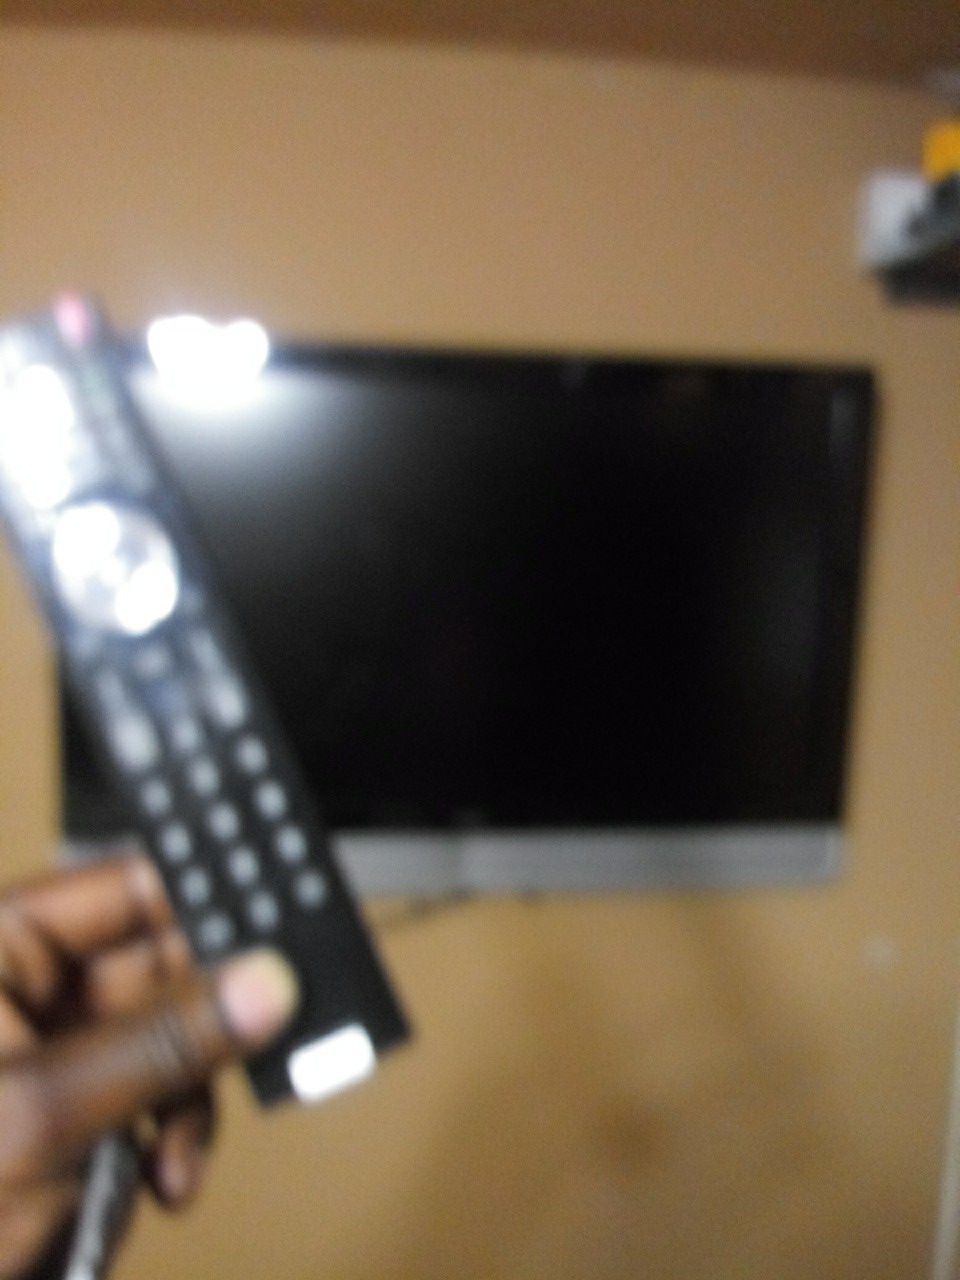 50 inch Vizio Non Smart Tv w Remote